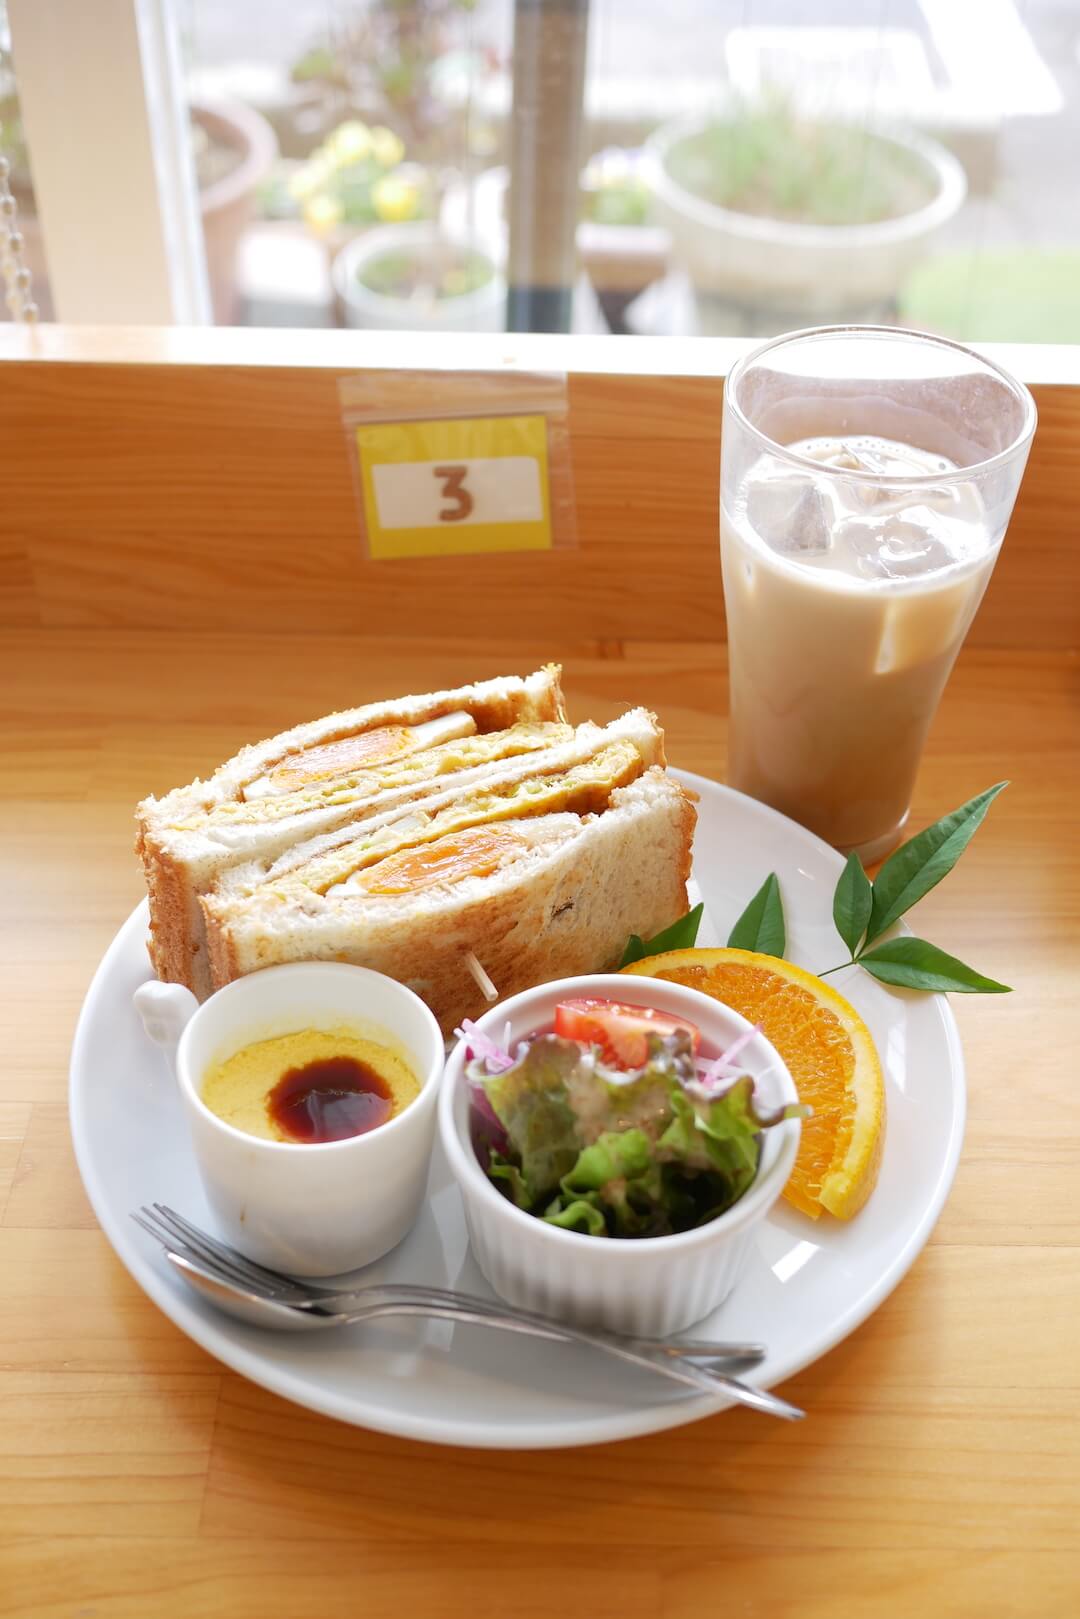 鉄板お好み焼きカフェ STAGE（ステージ）愛知県一宮市　モーニング ランチ グルメ パン